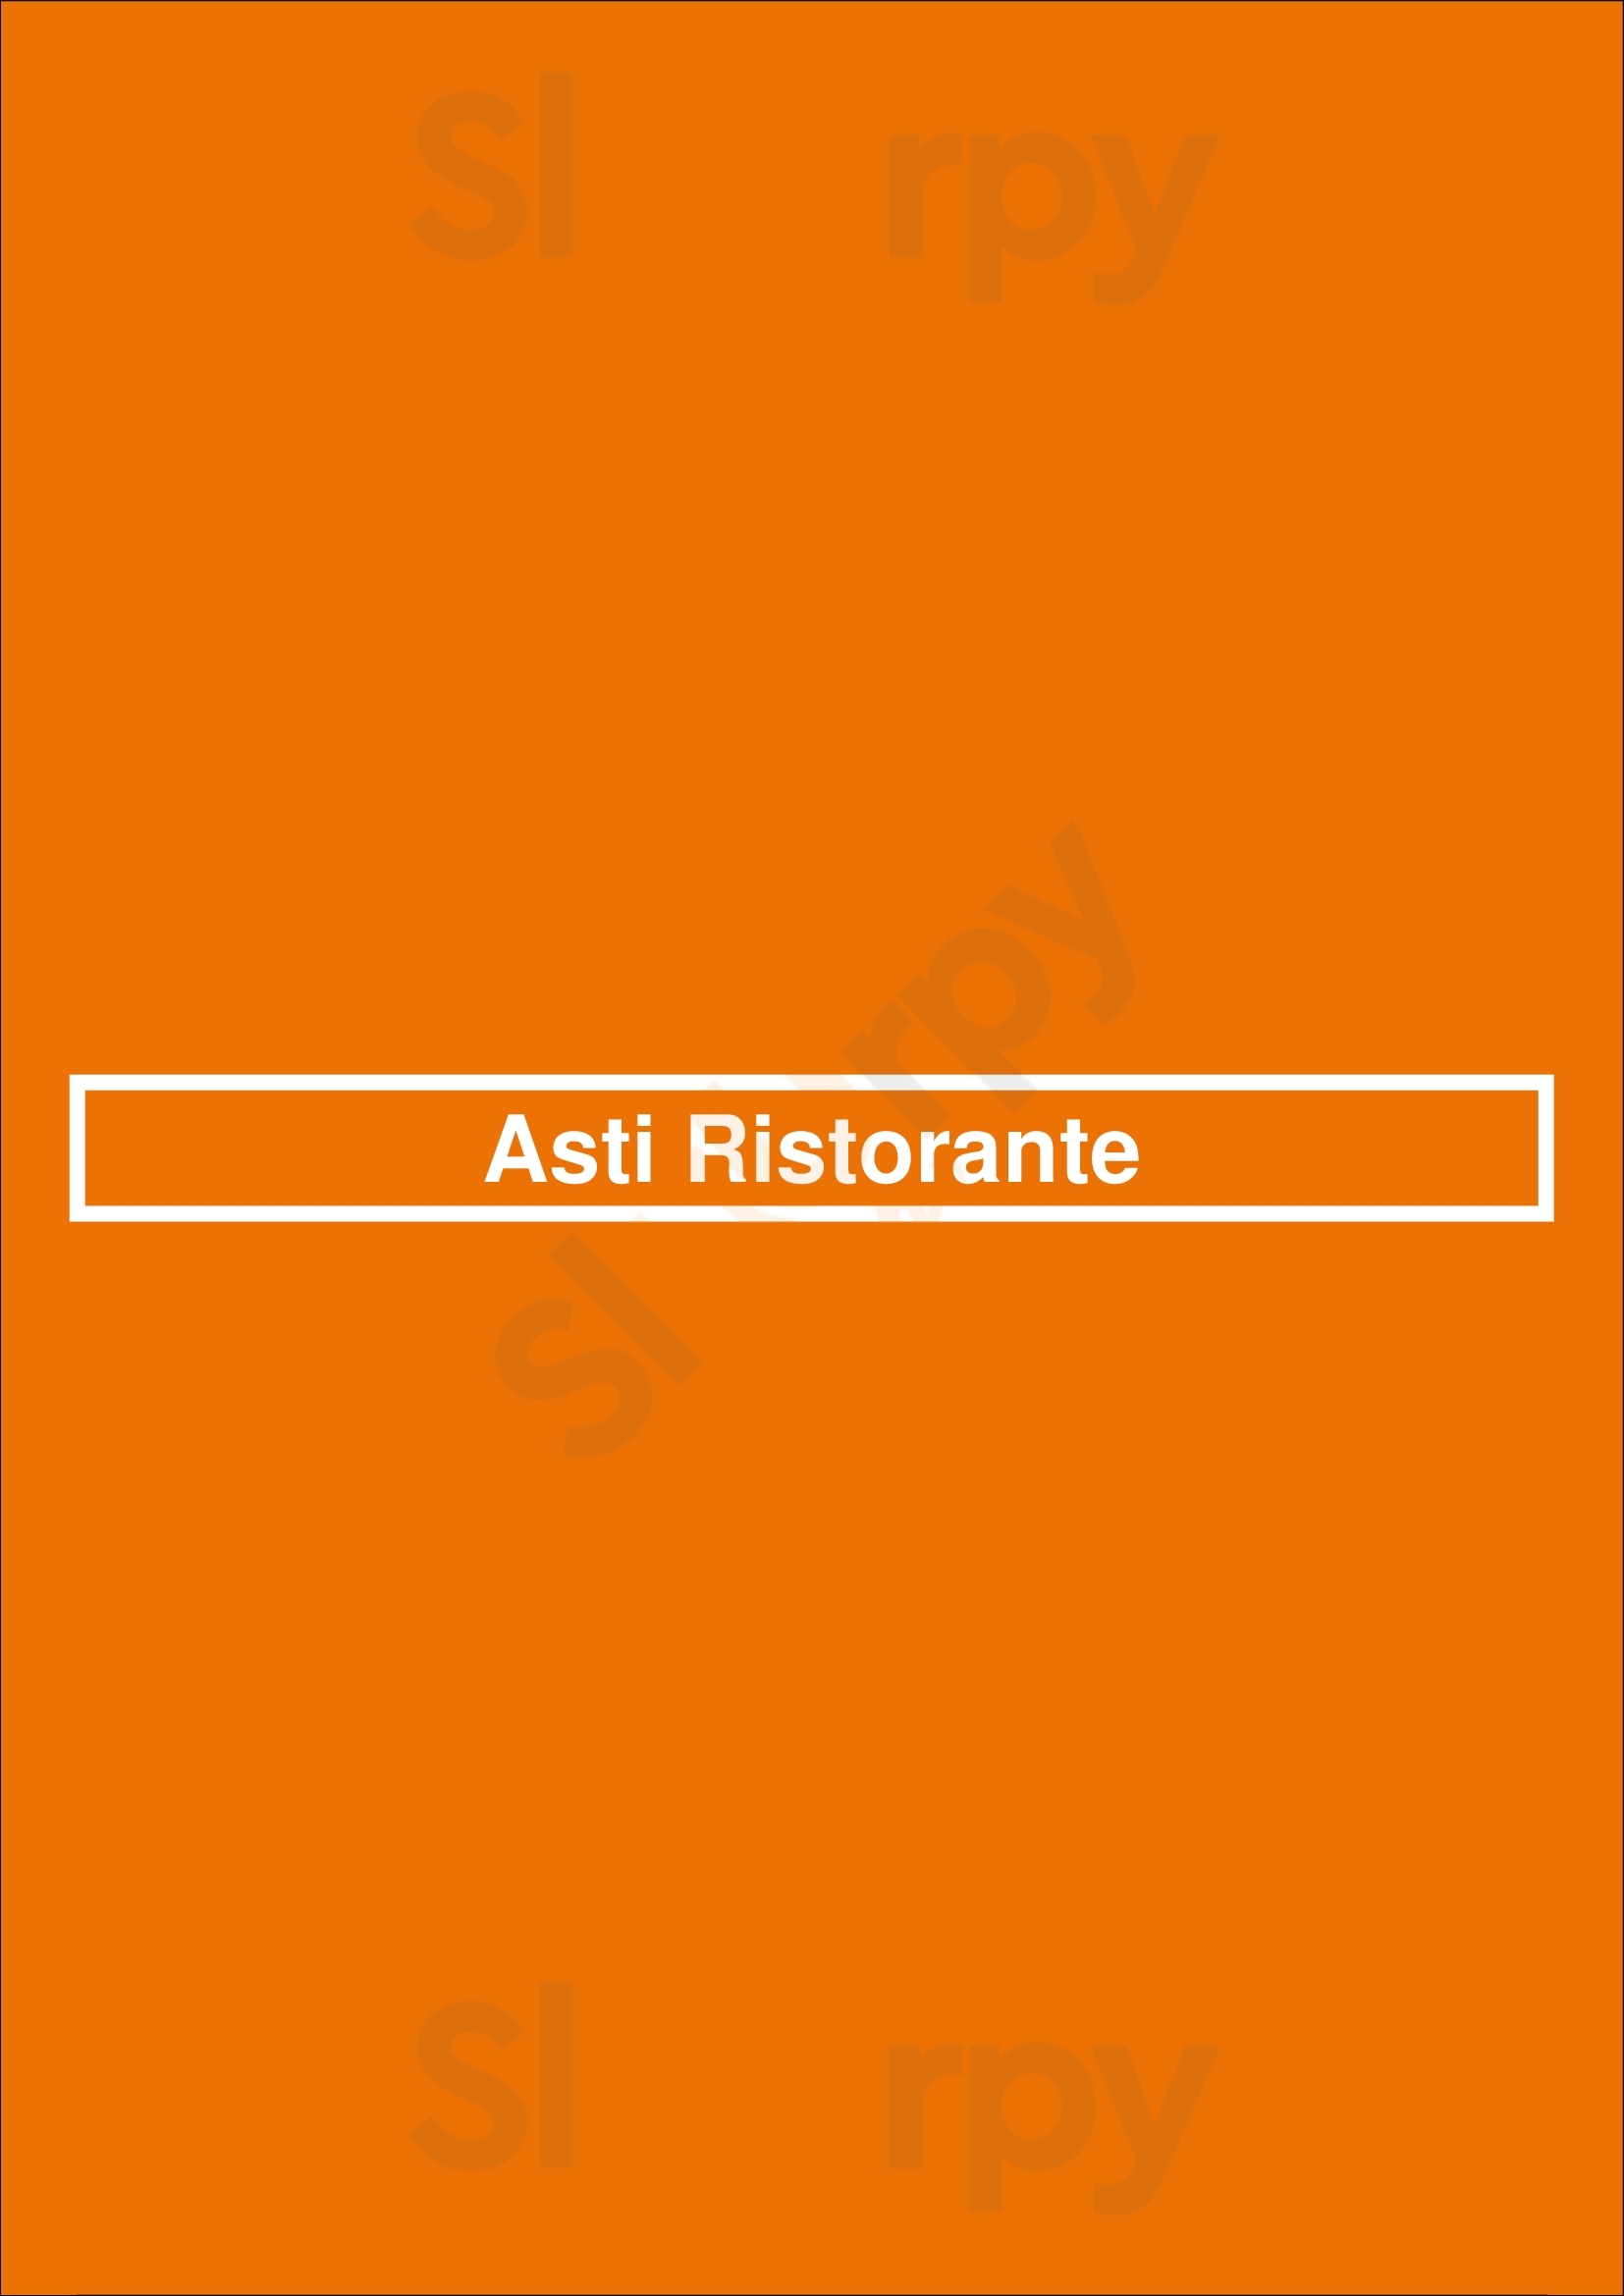 Asti Ristorante San Diego Menu - 1